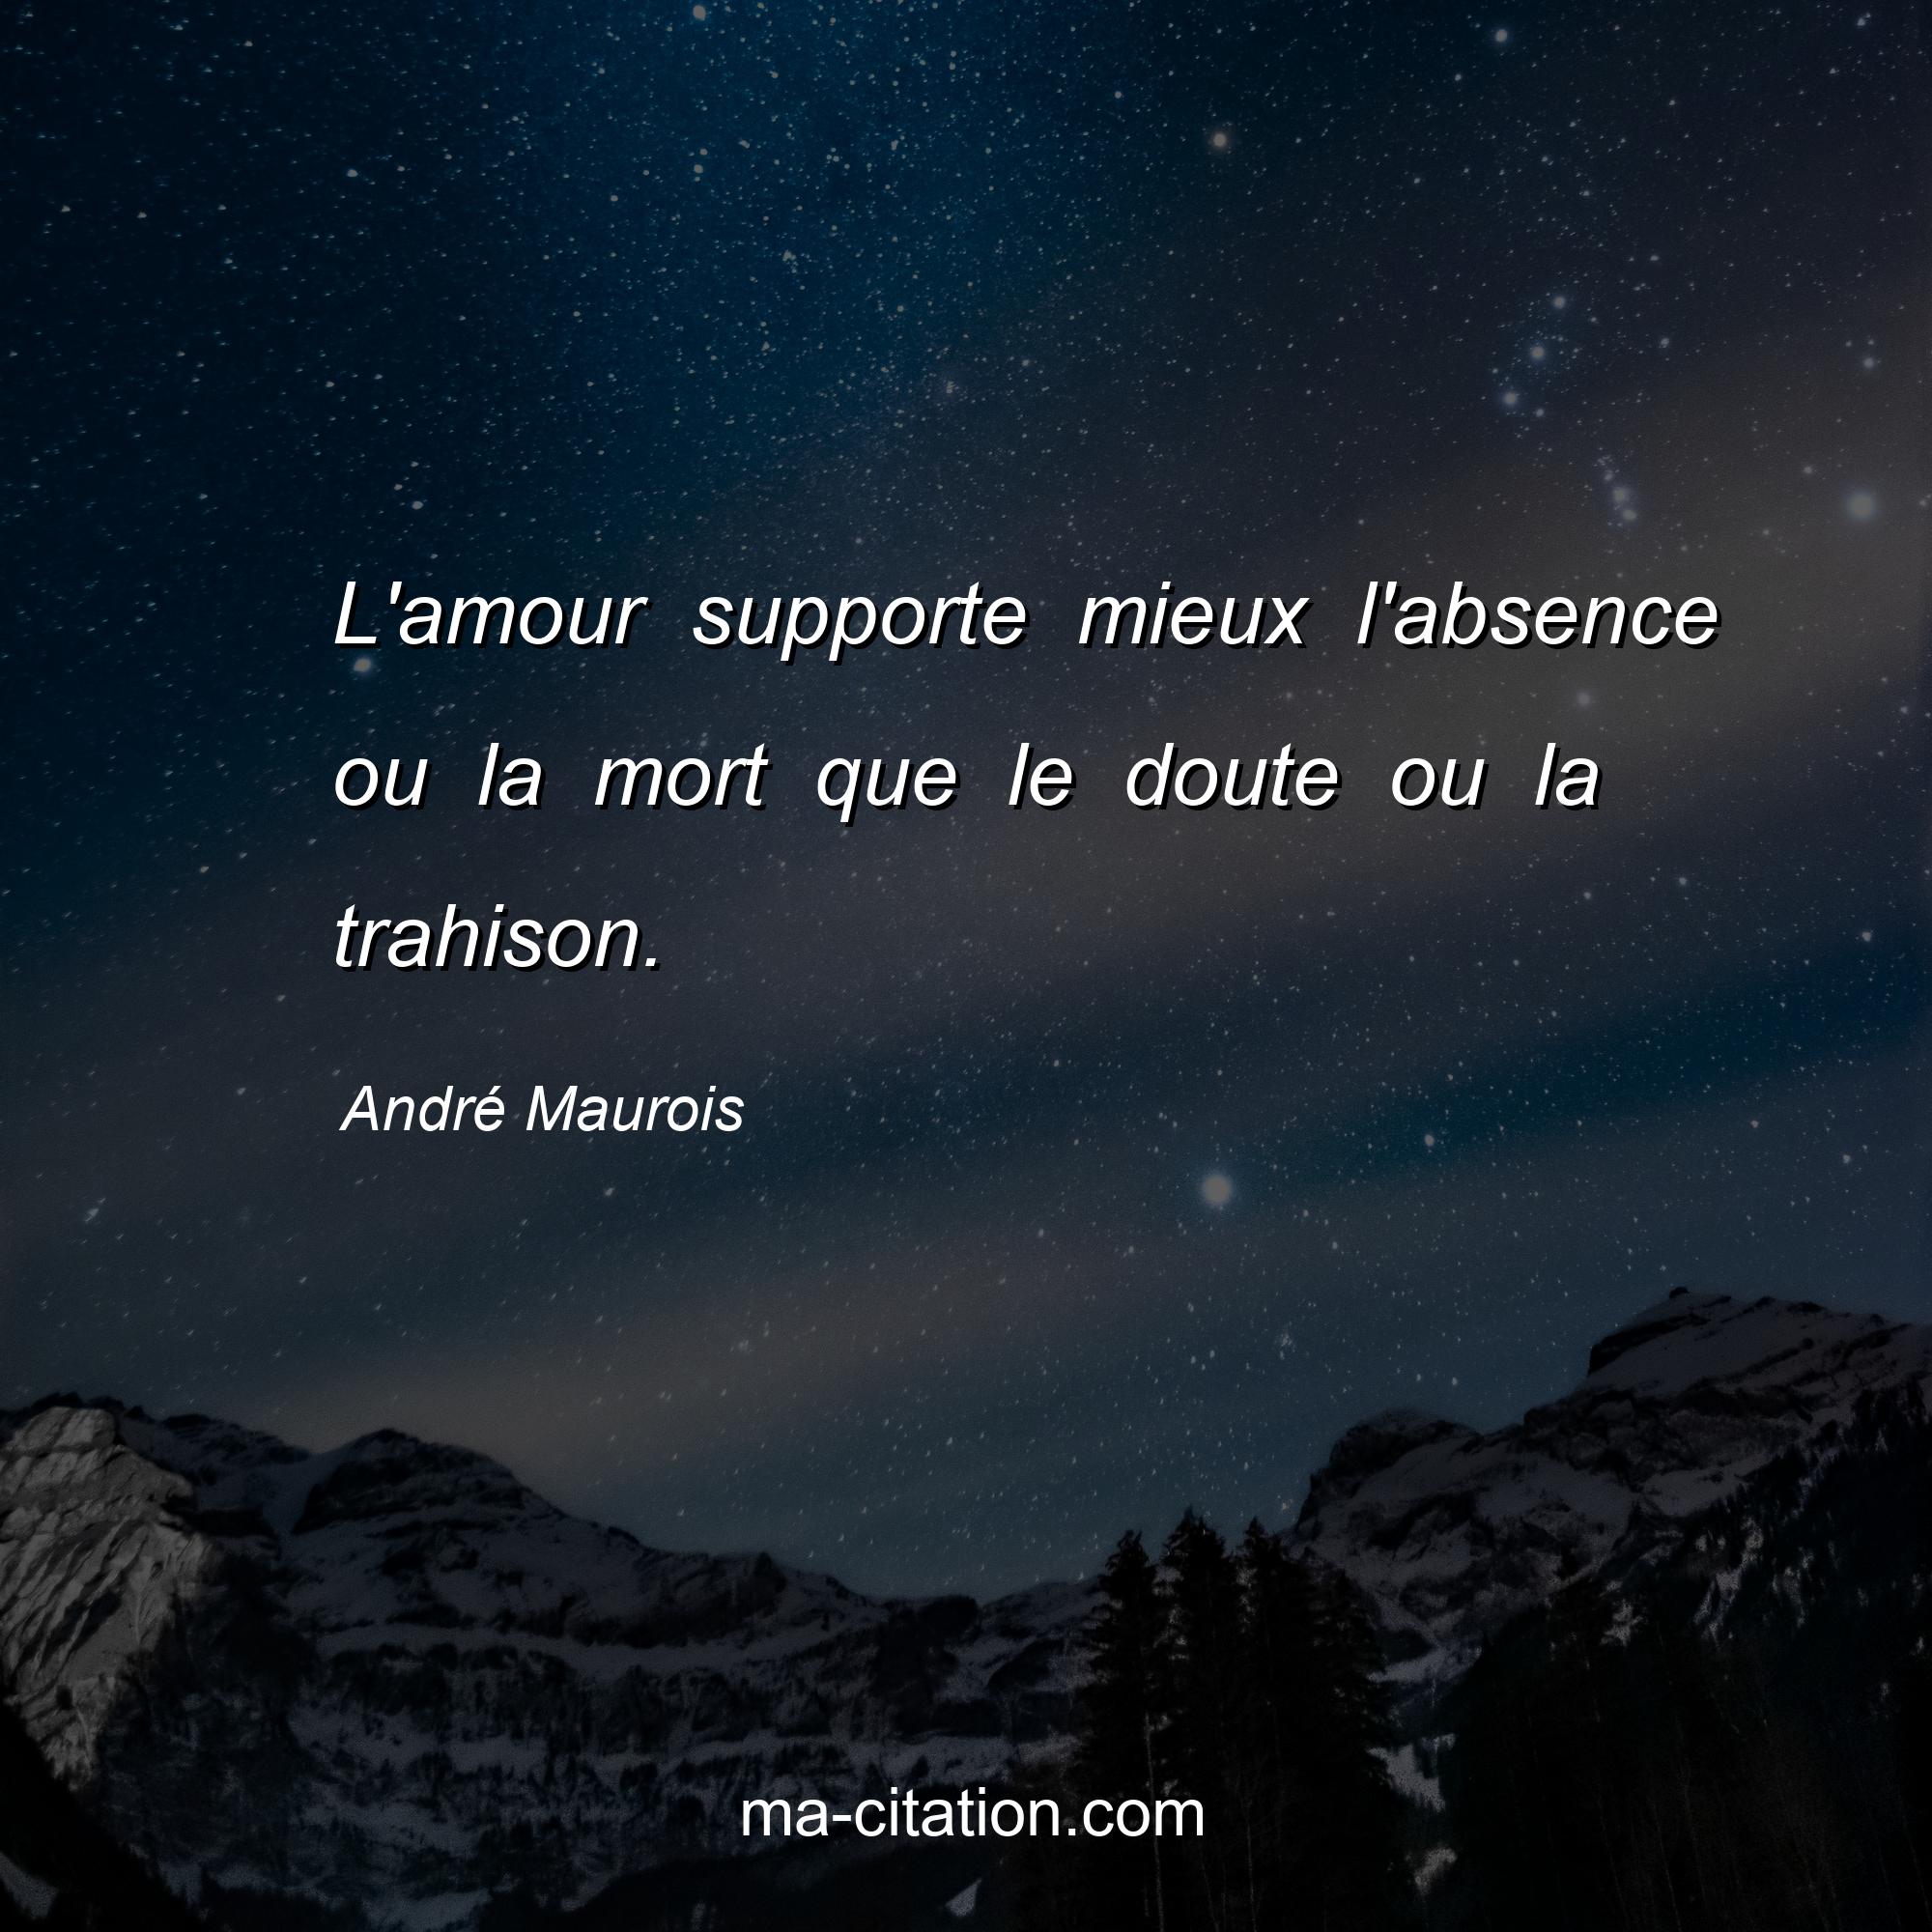 André Maurois : L'amour supporte mieux l'absence ou la mort que le doute ou la trahison.